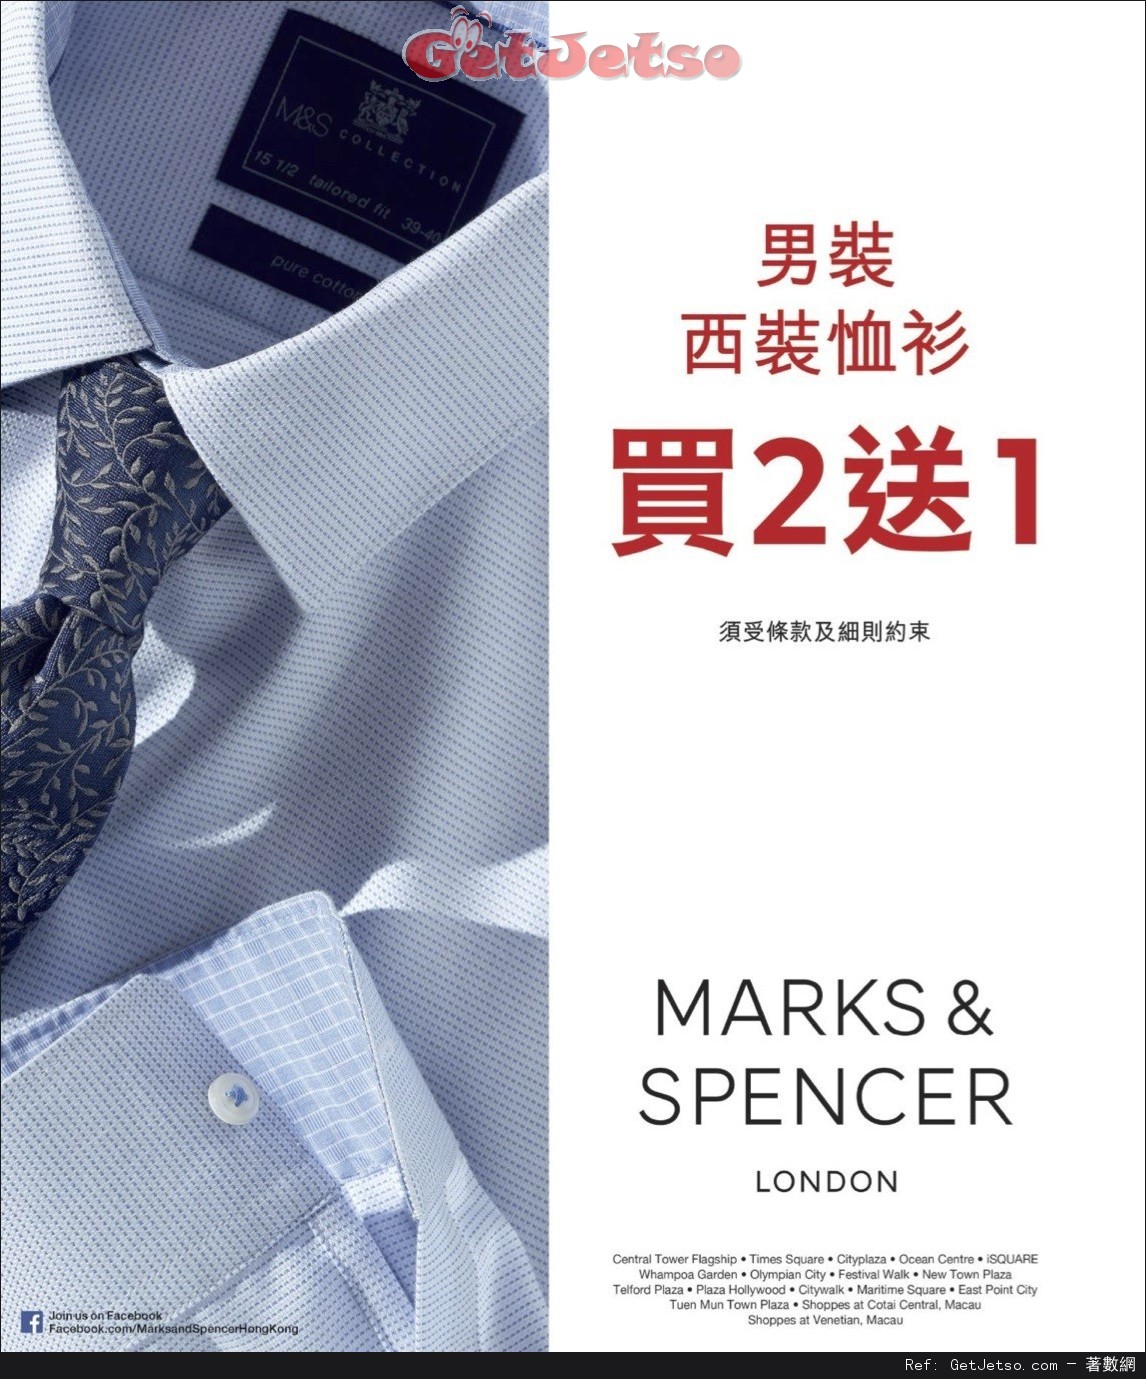 Marks and Spencer 男裝西裝恤衫買2送1優惠(至16年8月31日)圖片1